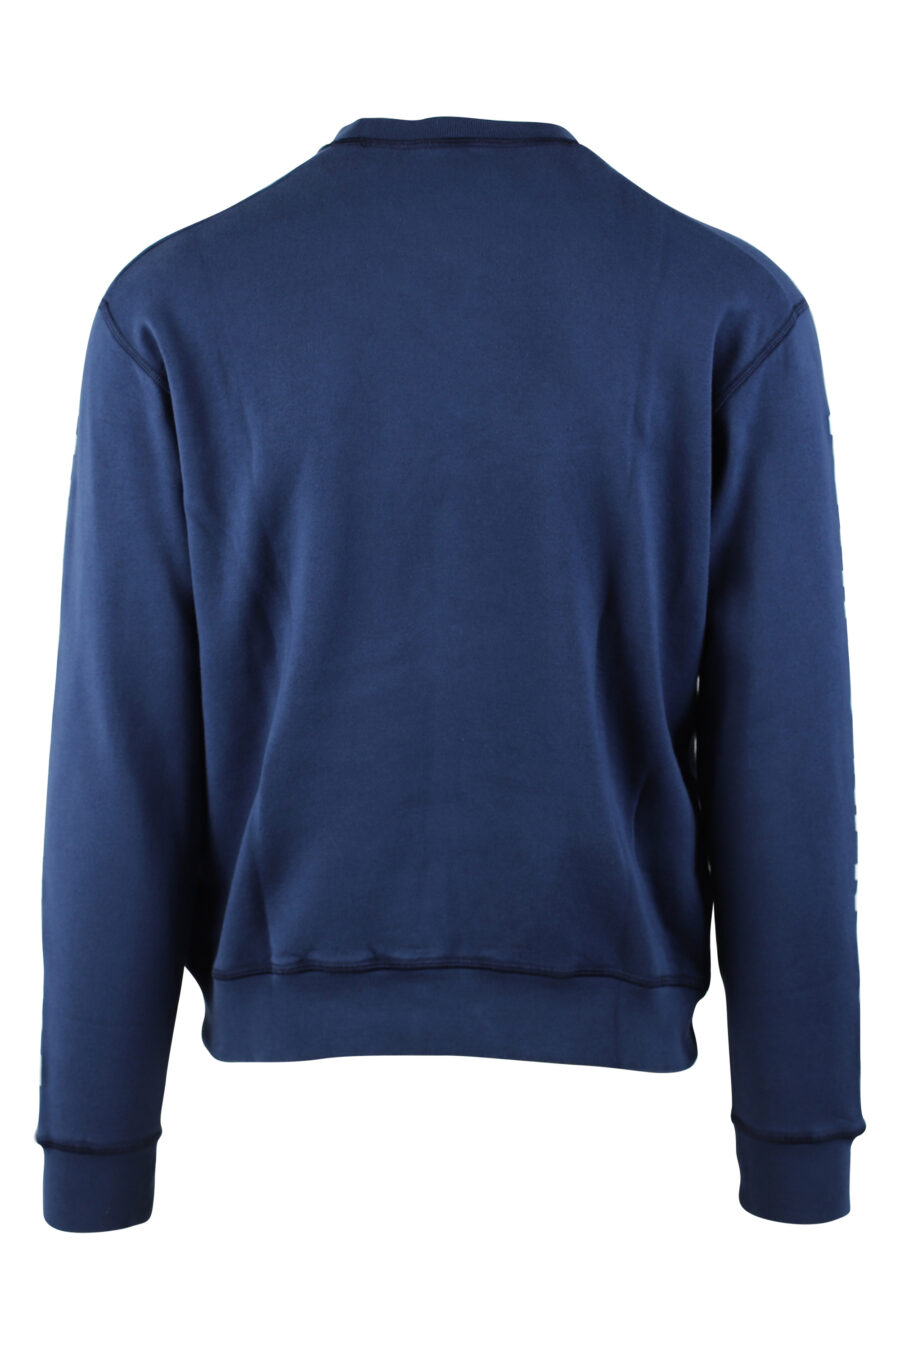 Blaues Sweatshirt mit weißem Maxilogo und Text auf den Ärmeln - IMG 0593